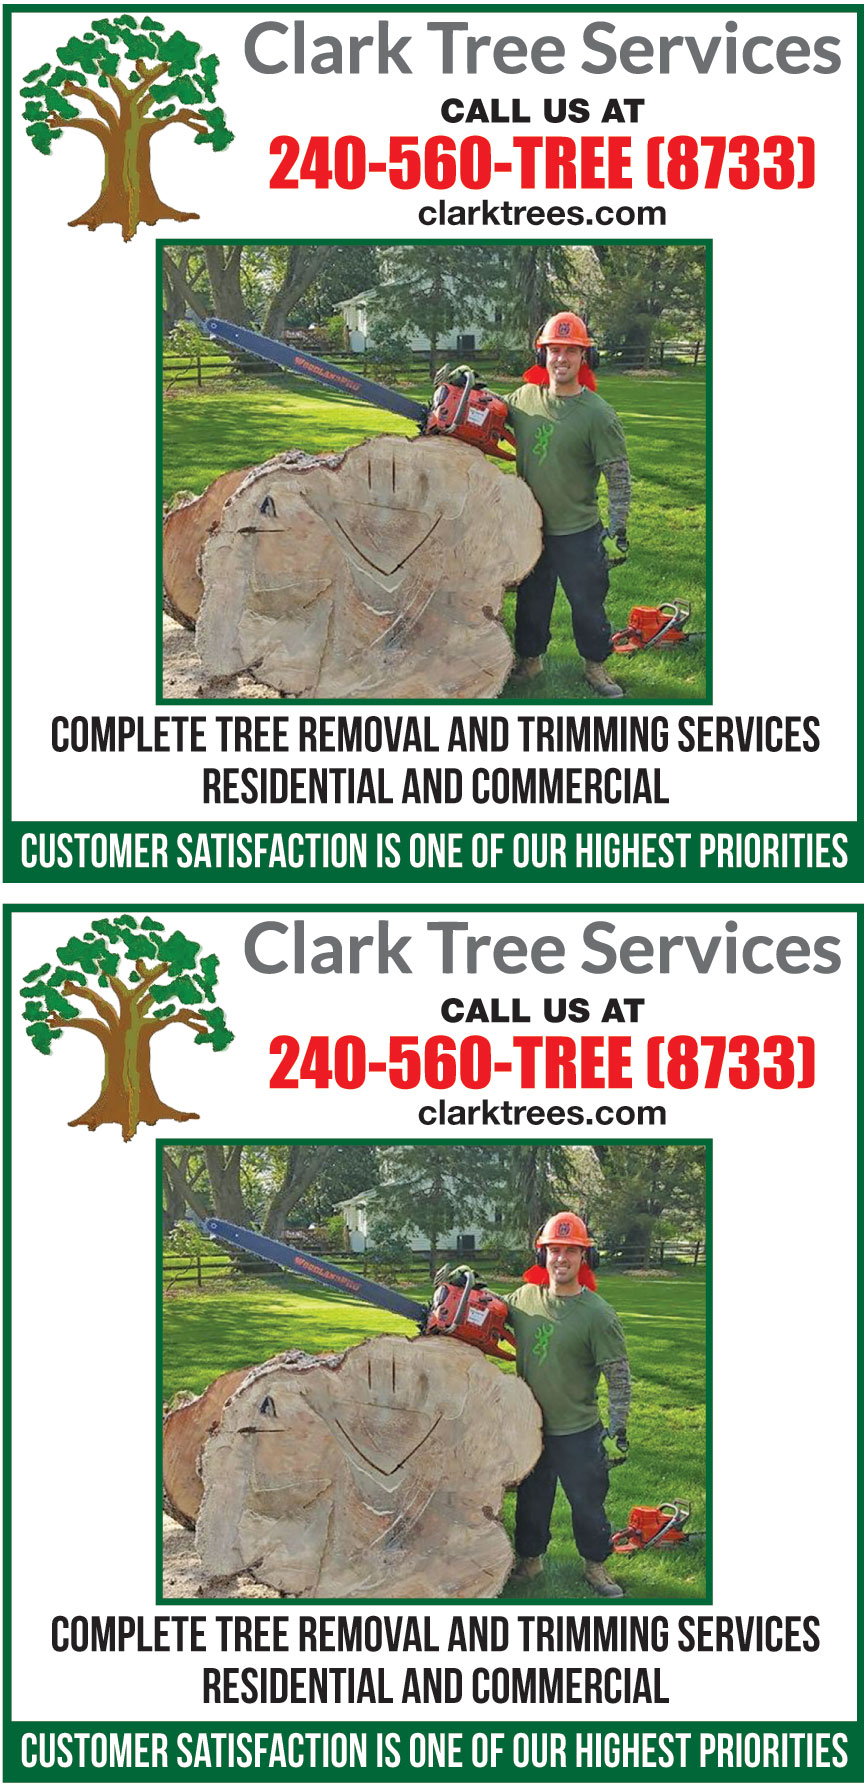 CLARK TREE SERVICES